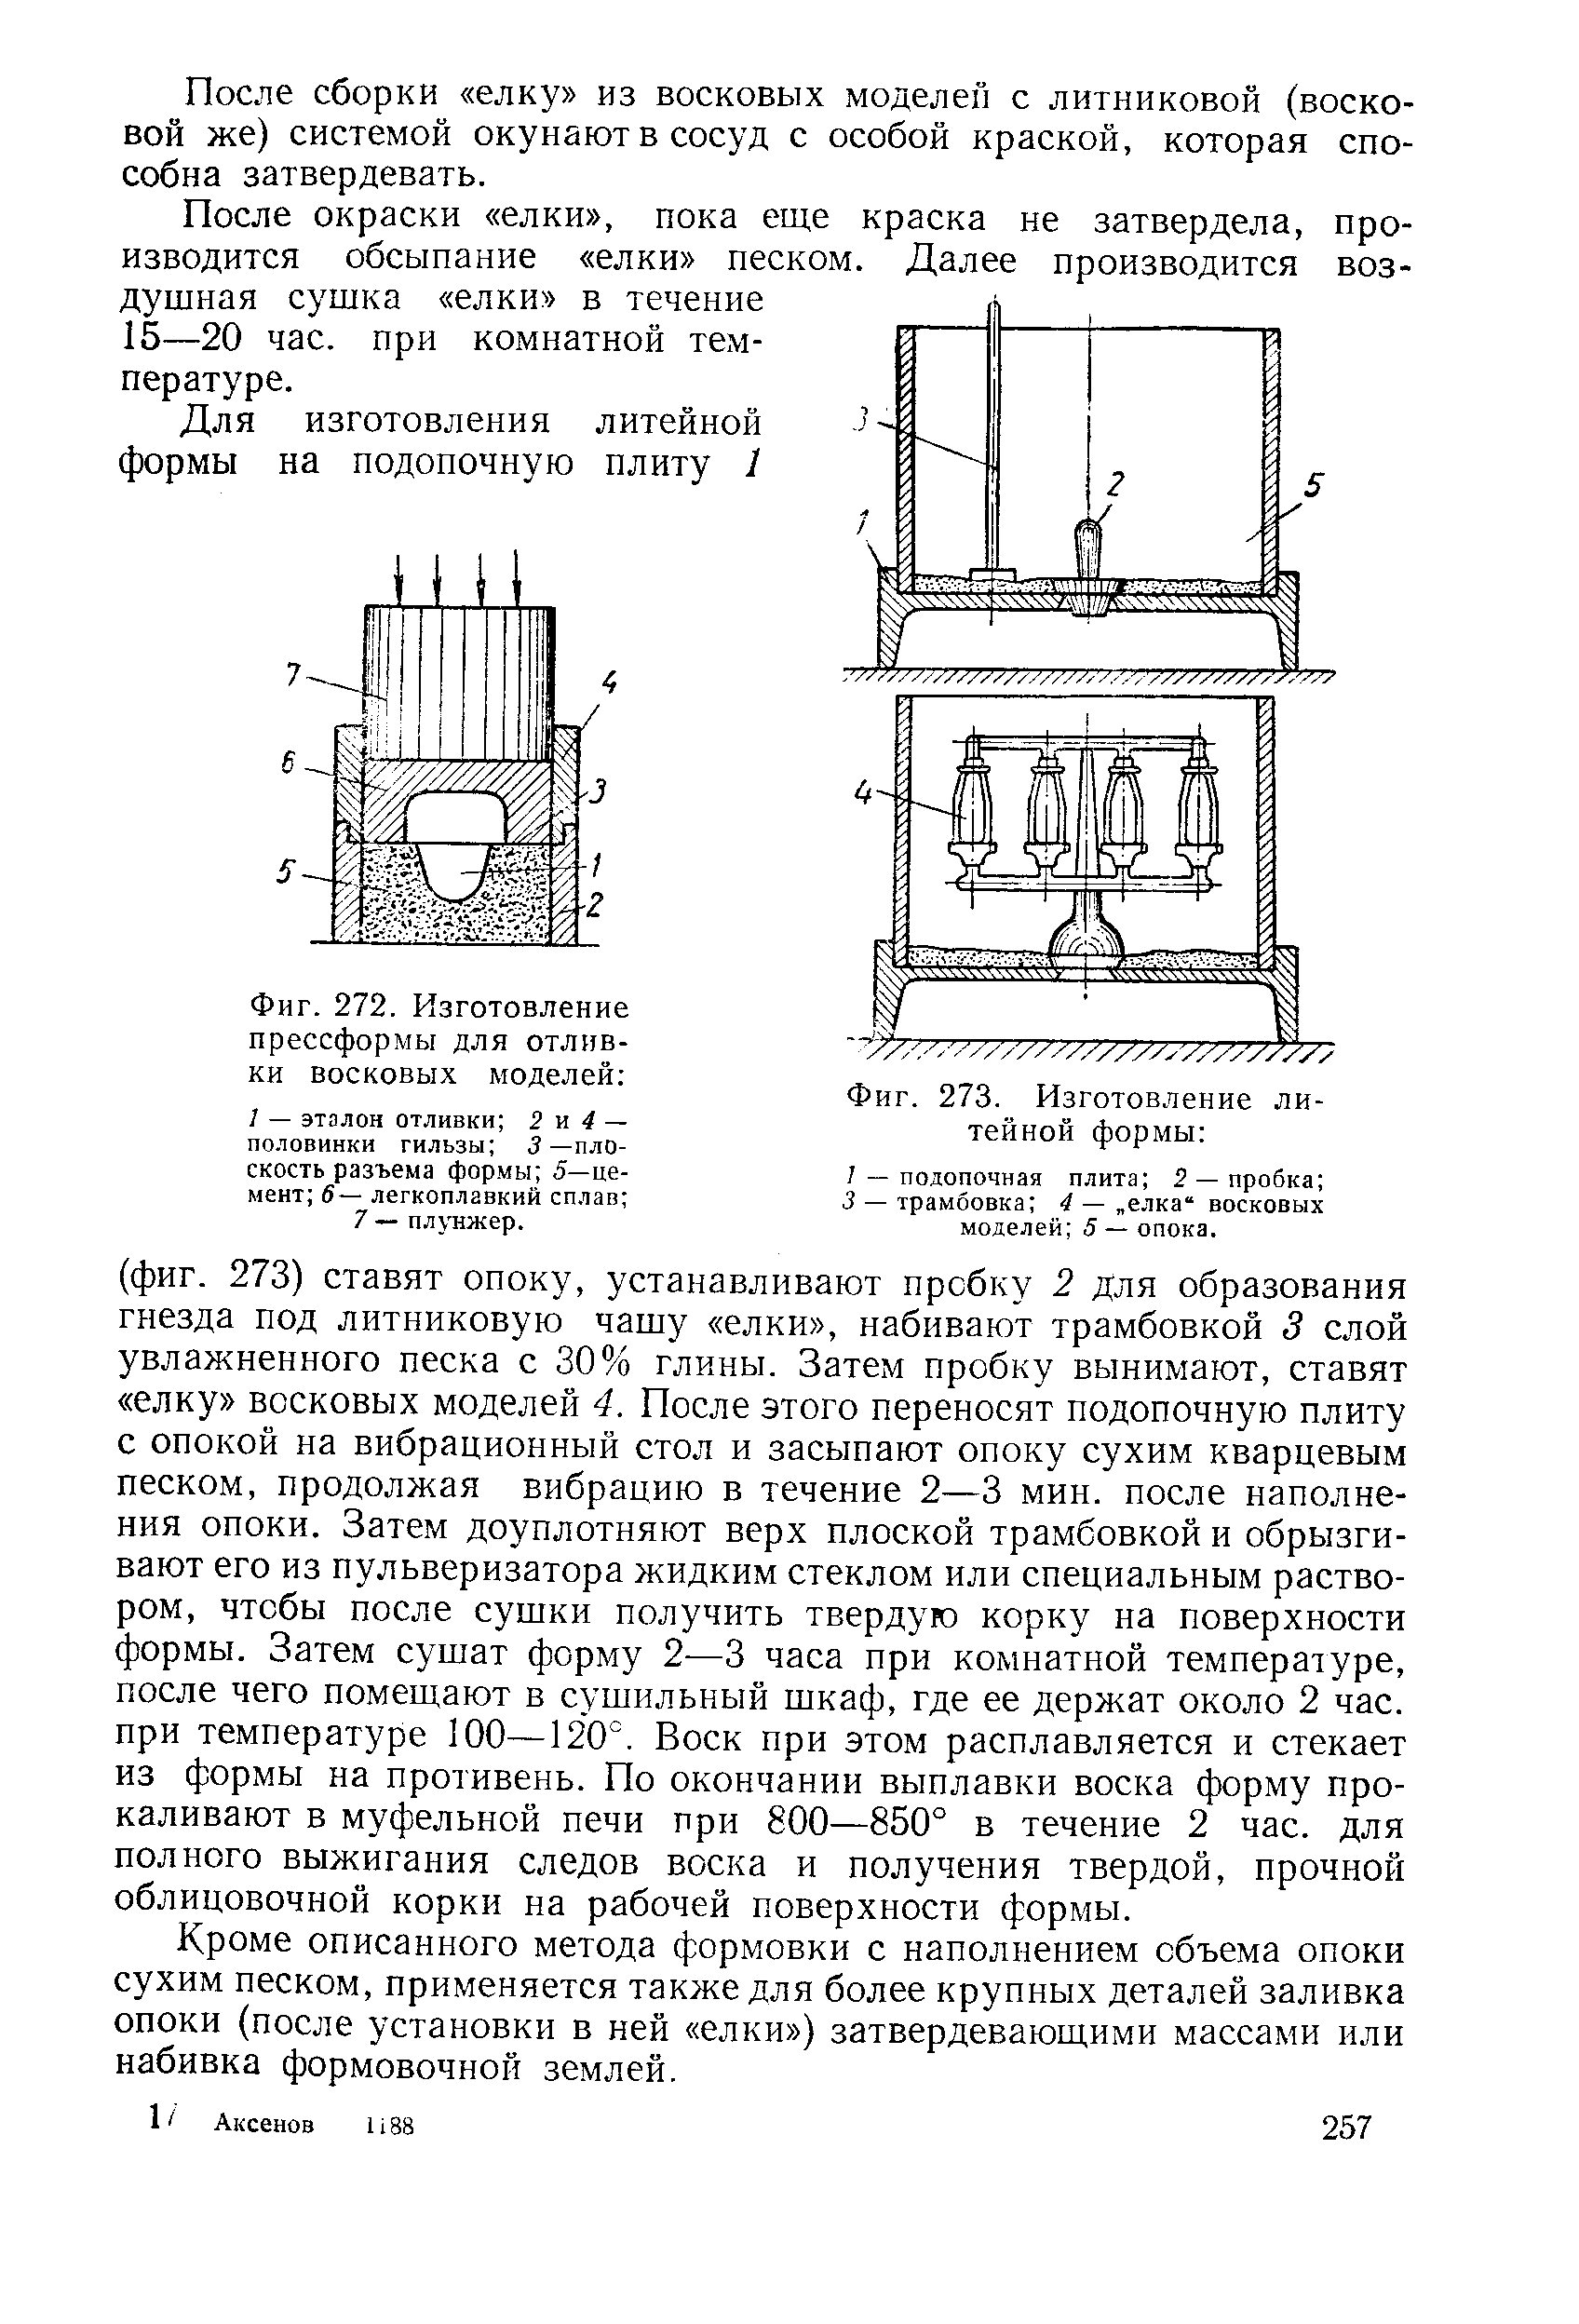 Фиг. 272, Изготовление прессформы для отливки восковых моделей 
